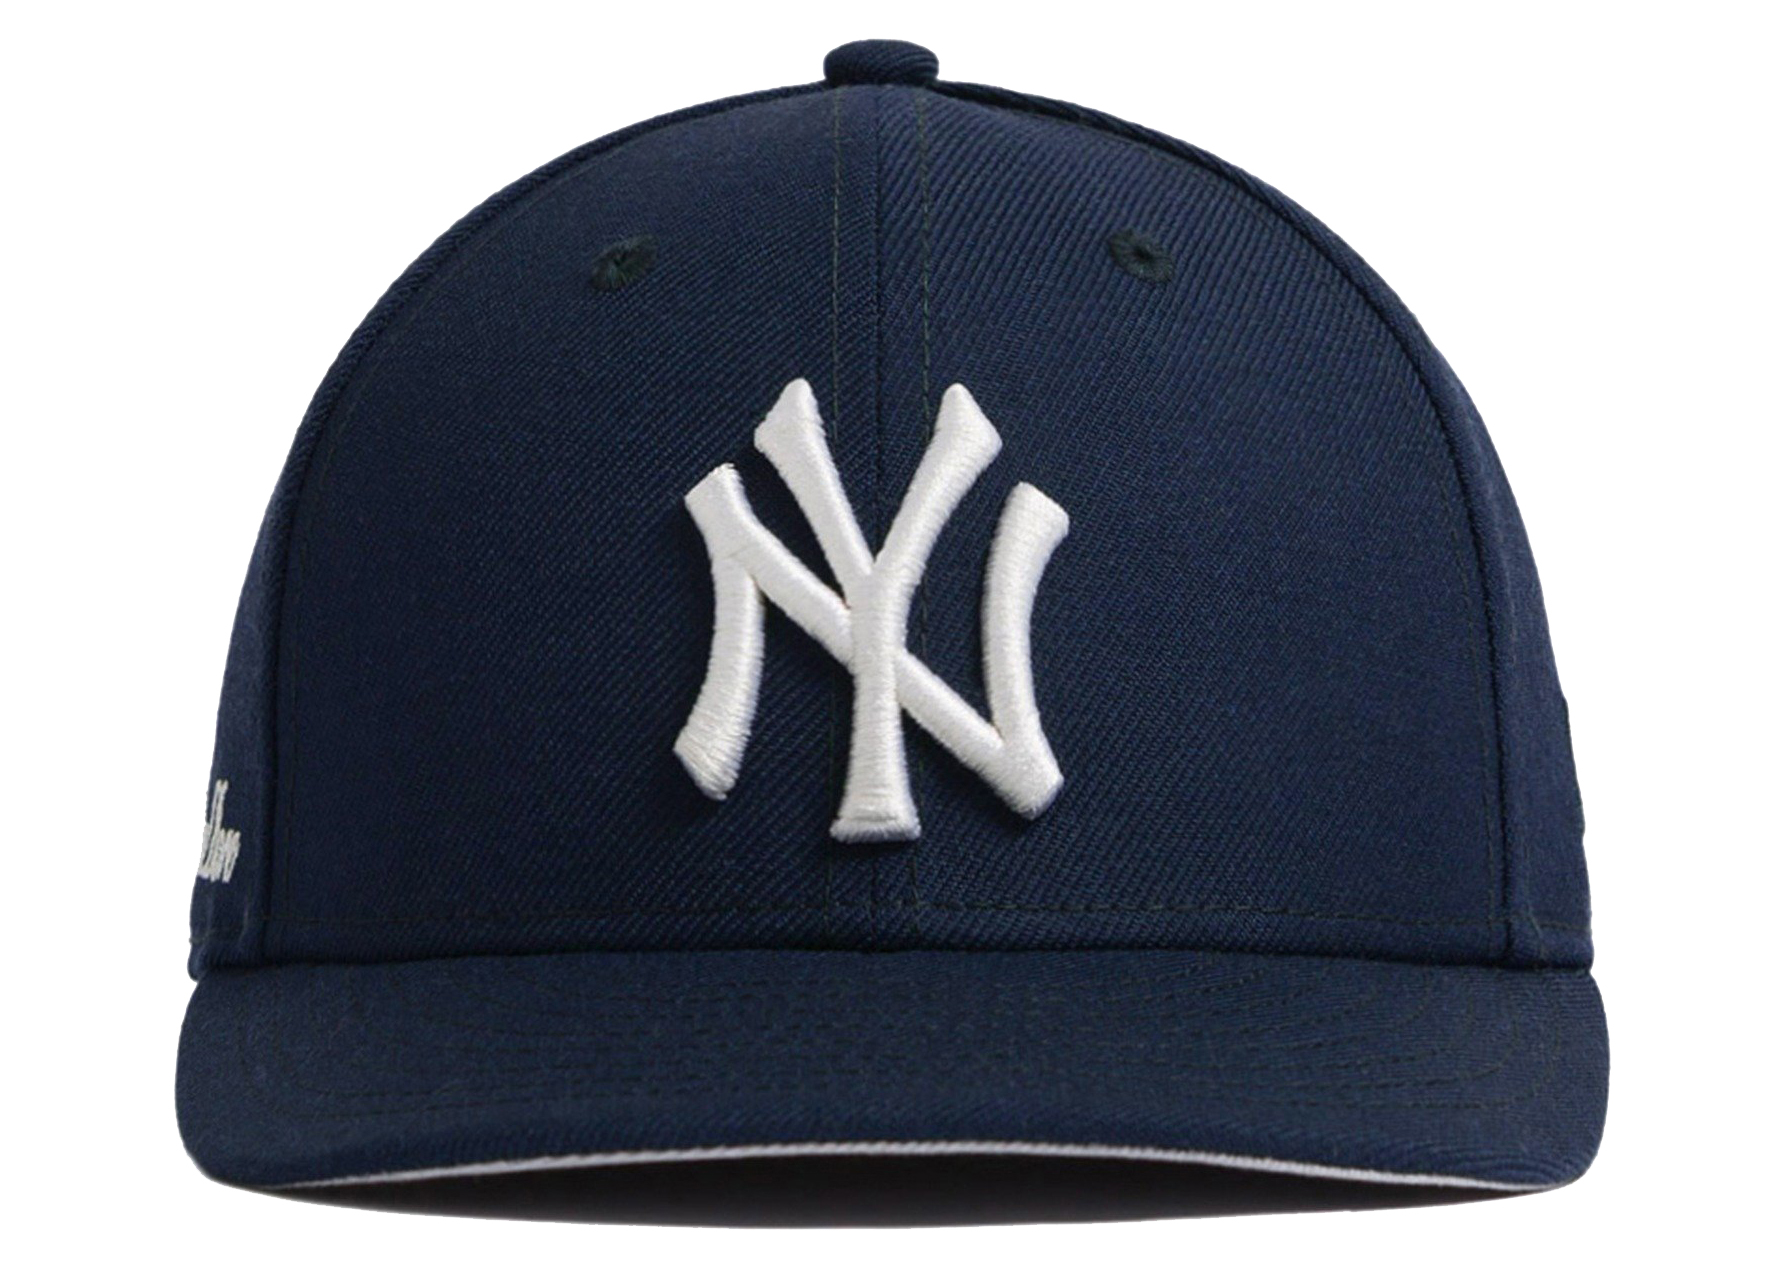 Aime Leon Dore x New Era Yankees Hat Navy 男士- SS21 - TW